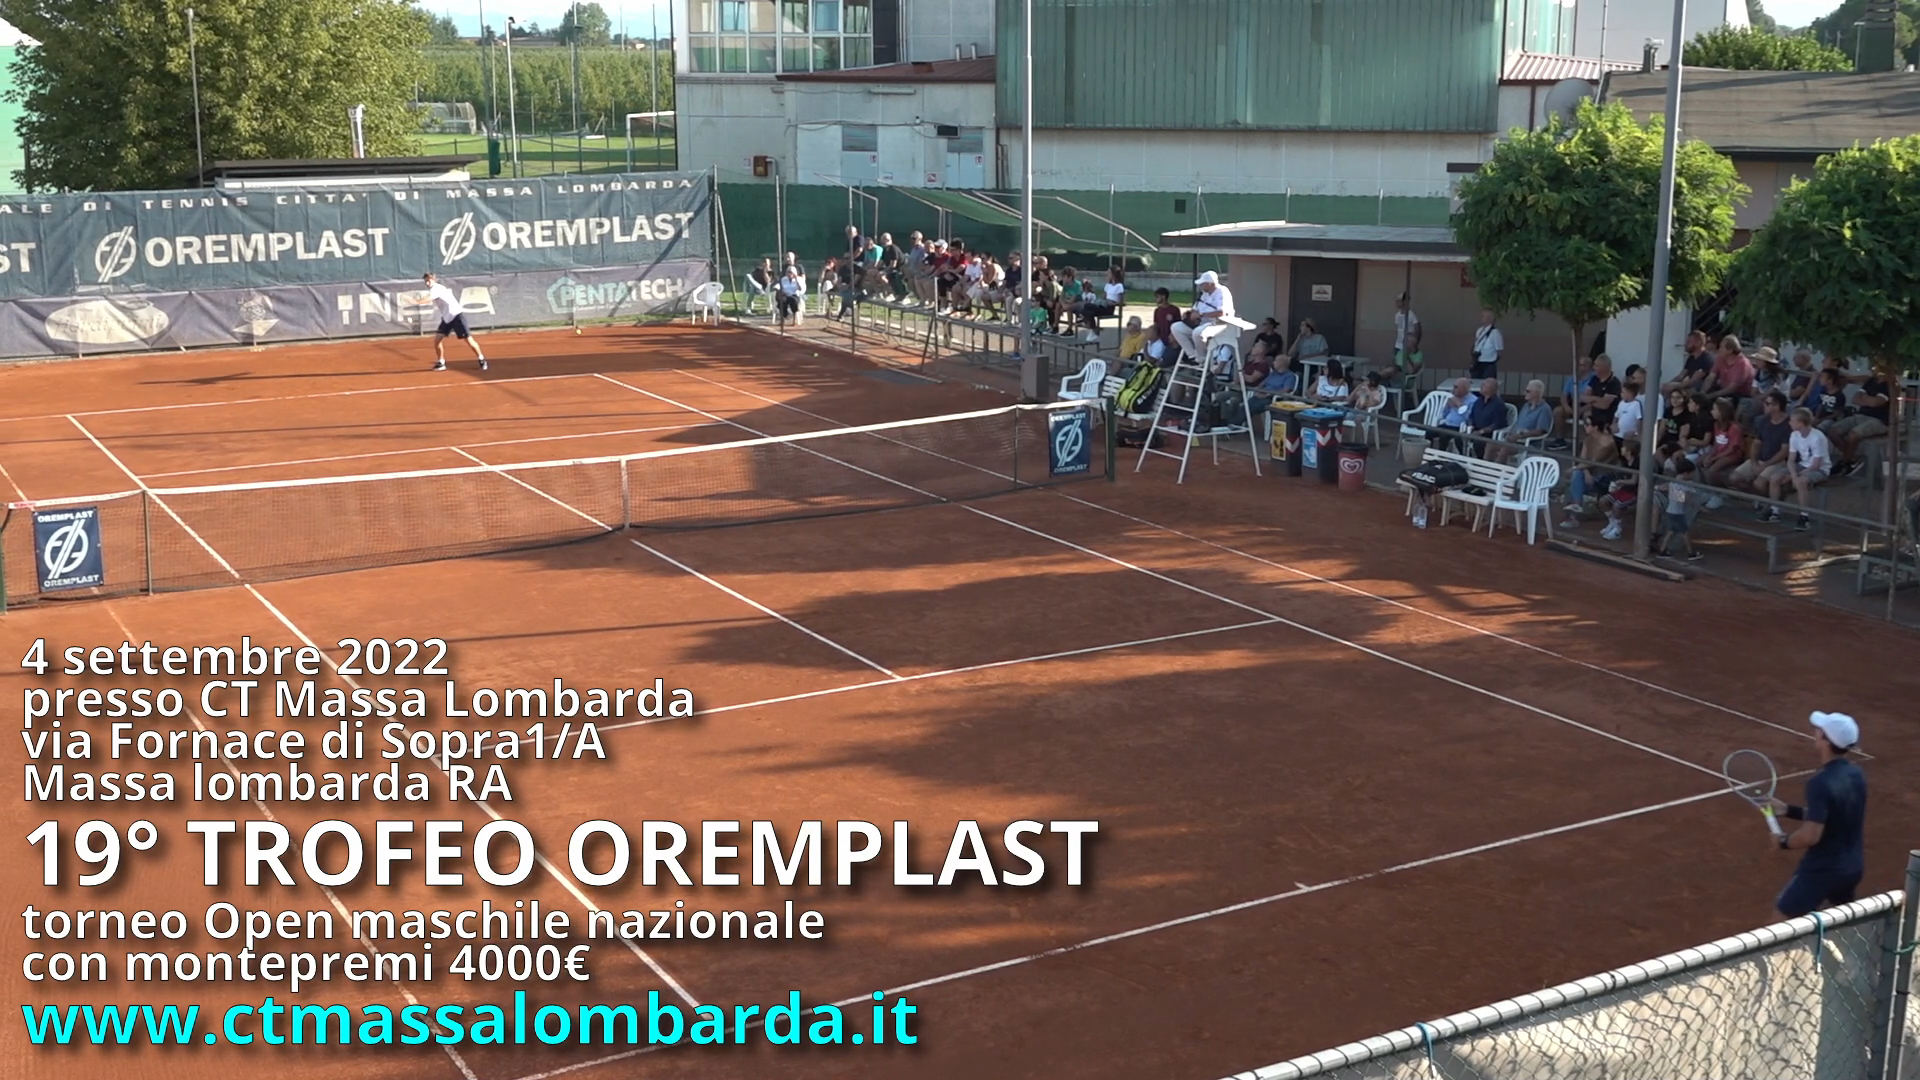 19o Trofeo Oremplast: Torneo Open Maschile Nazionale con montepremi 4.000€